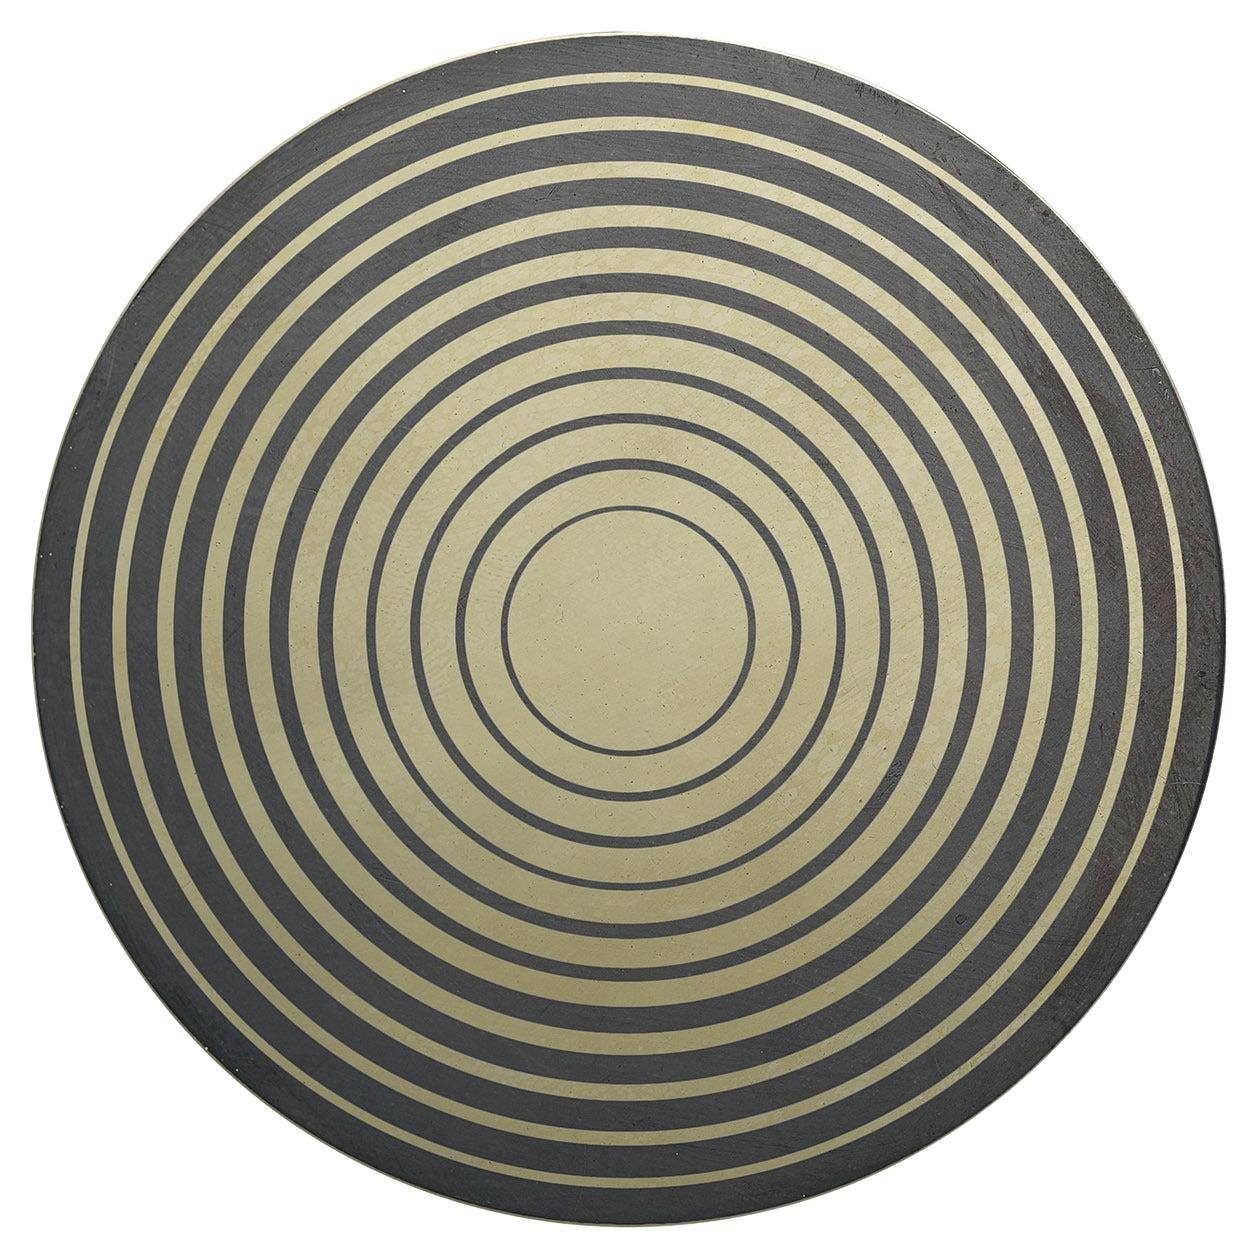 Aniconico Decorative Disk #8 For Sale